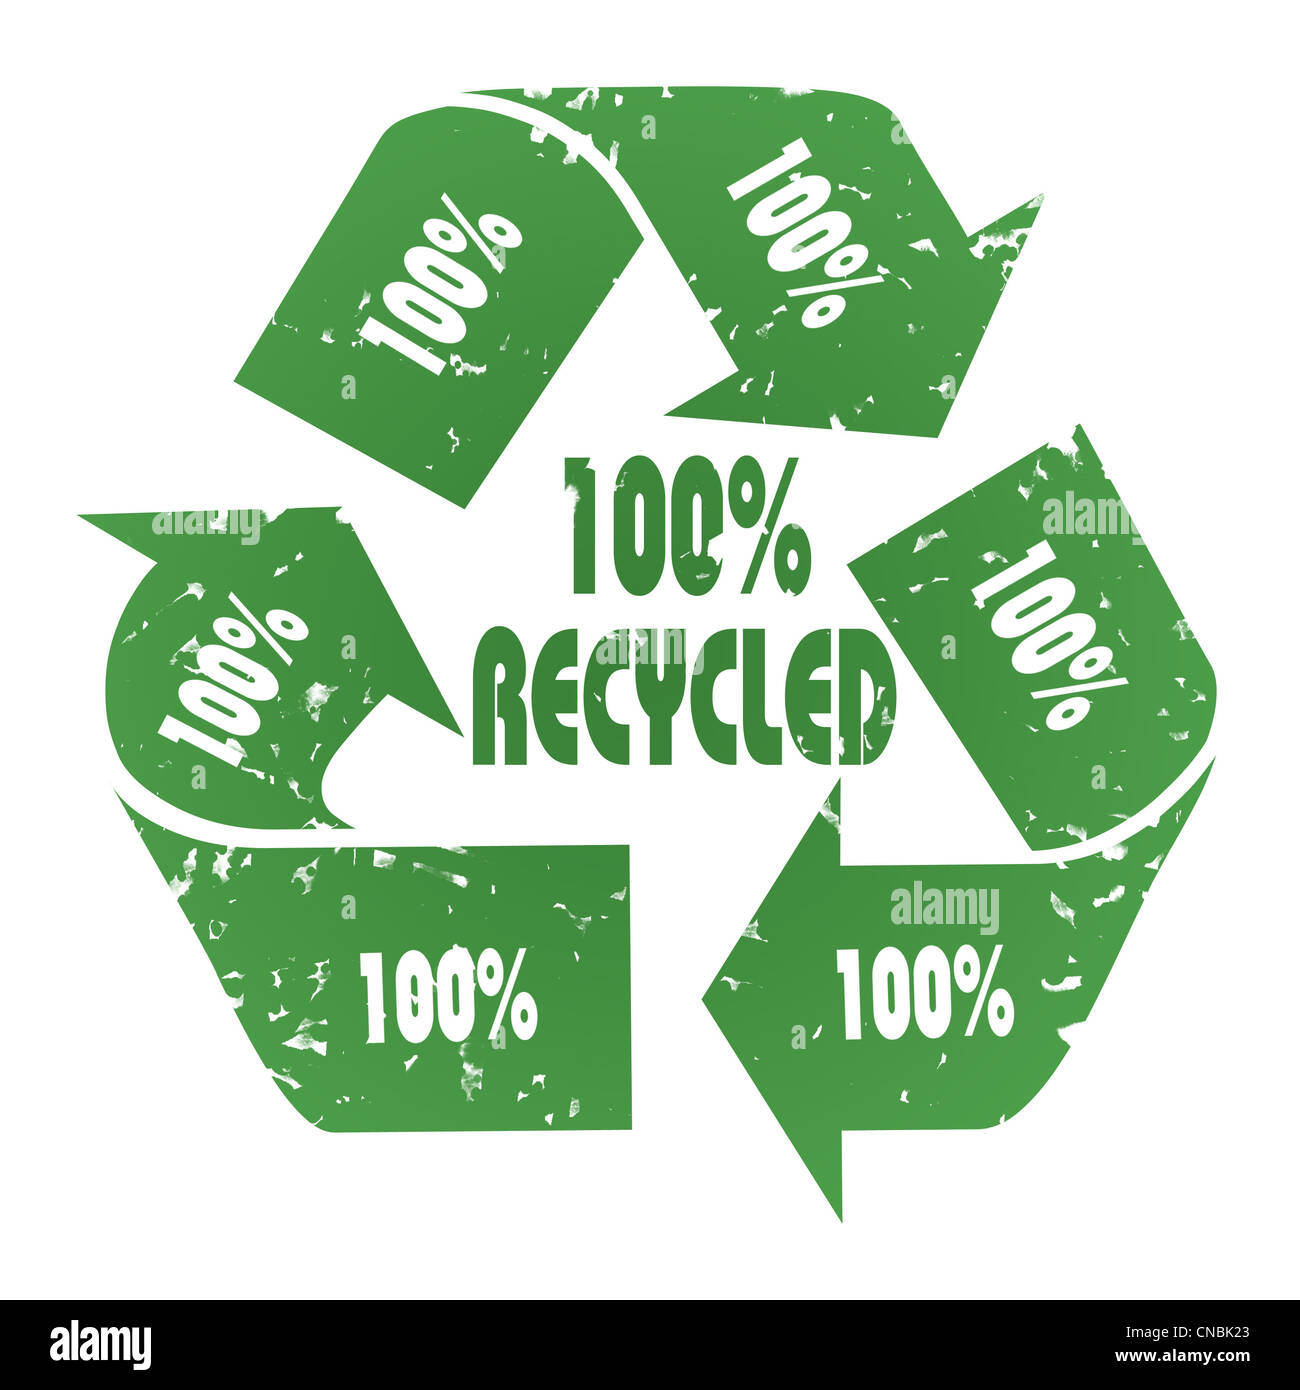 3-flecha verde símbolo 100% reciclado con efecto grunge - Concepto de reciclaje Foto de stock